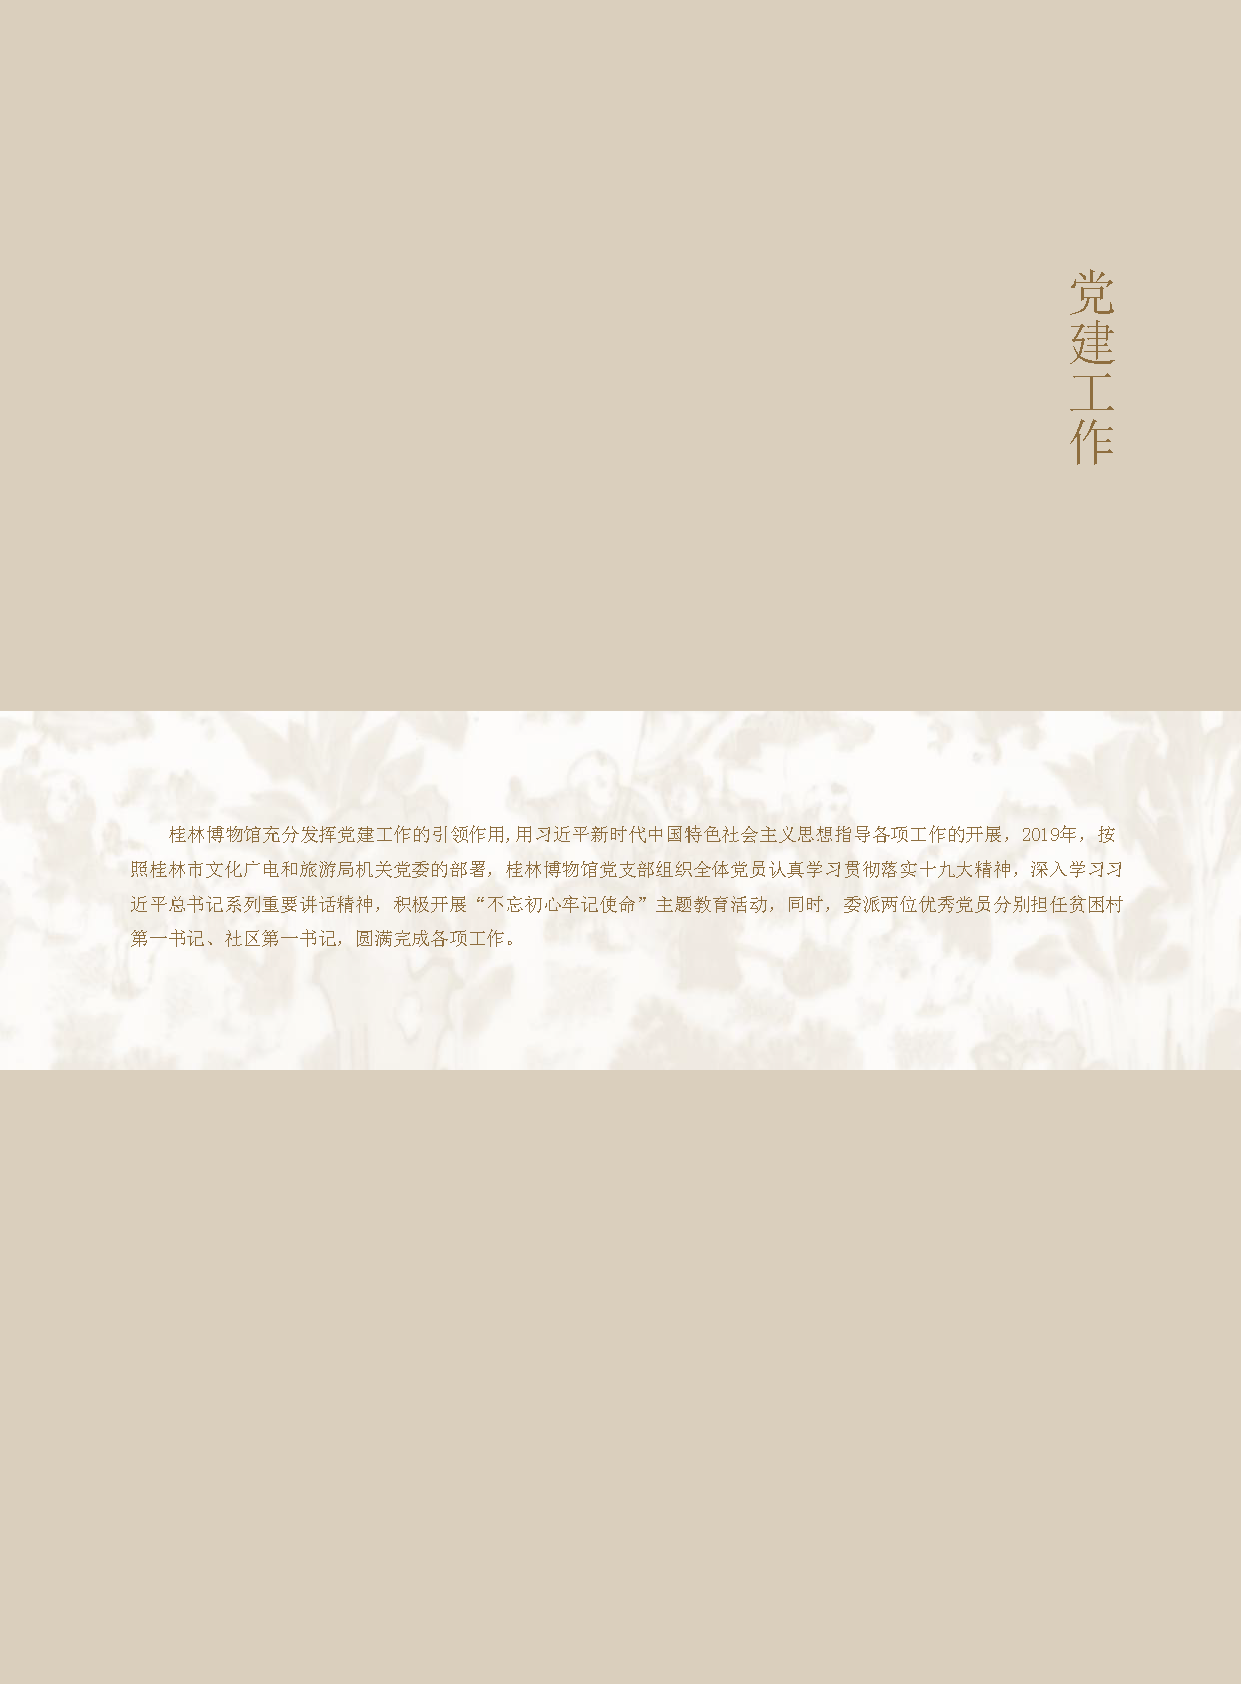 桂林博物馆2019年度报告.pdf_页面_009.png